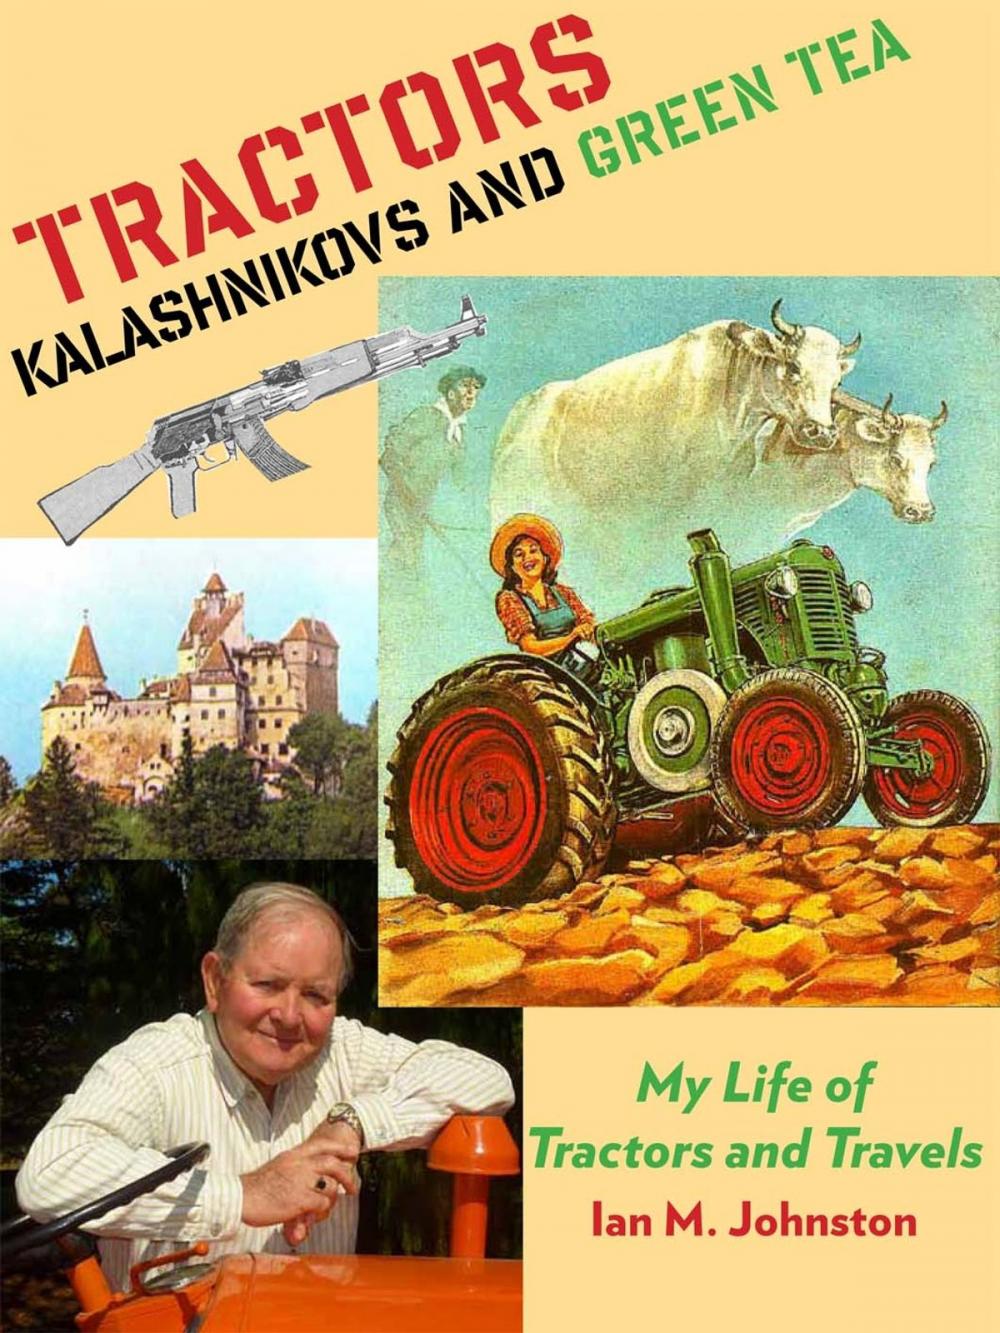 Big bigCover of Tractors, Kalashnikovs and Green Tea